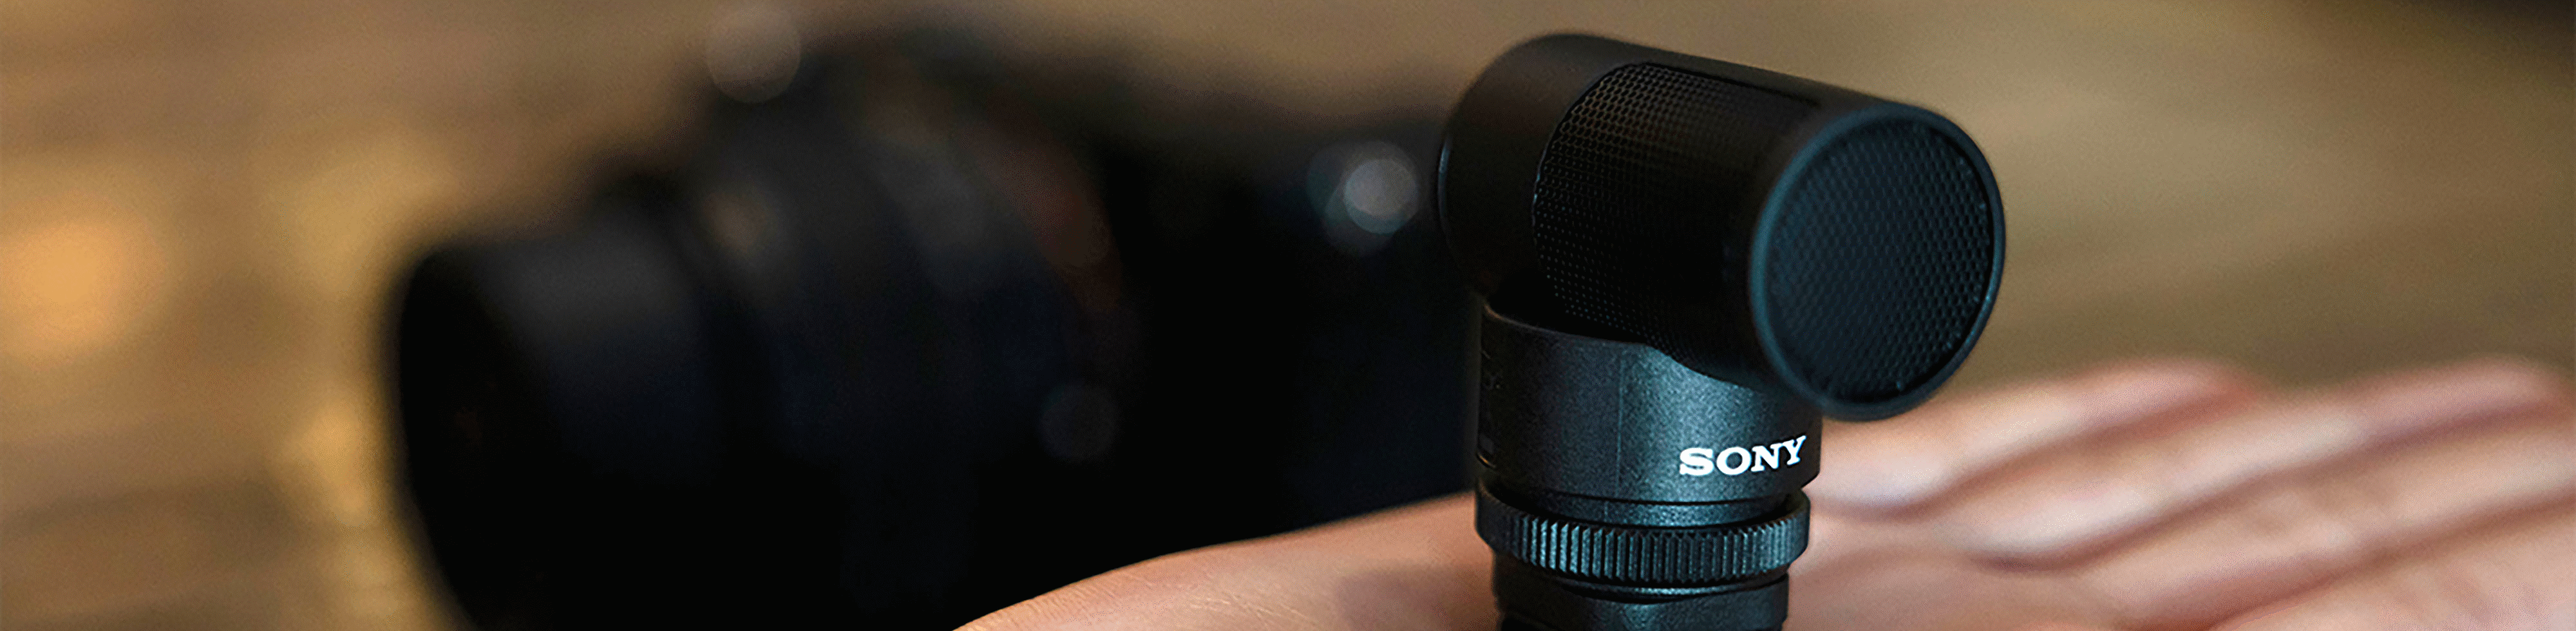 Зображення мікрофона ECM-G1 на долоні; завдяки компактним розмірам він вміщується в одну руку.